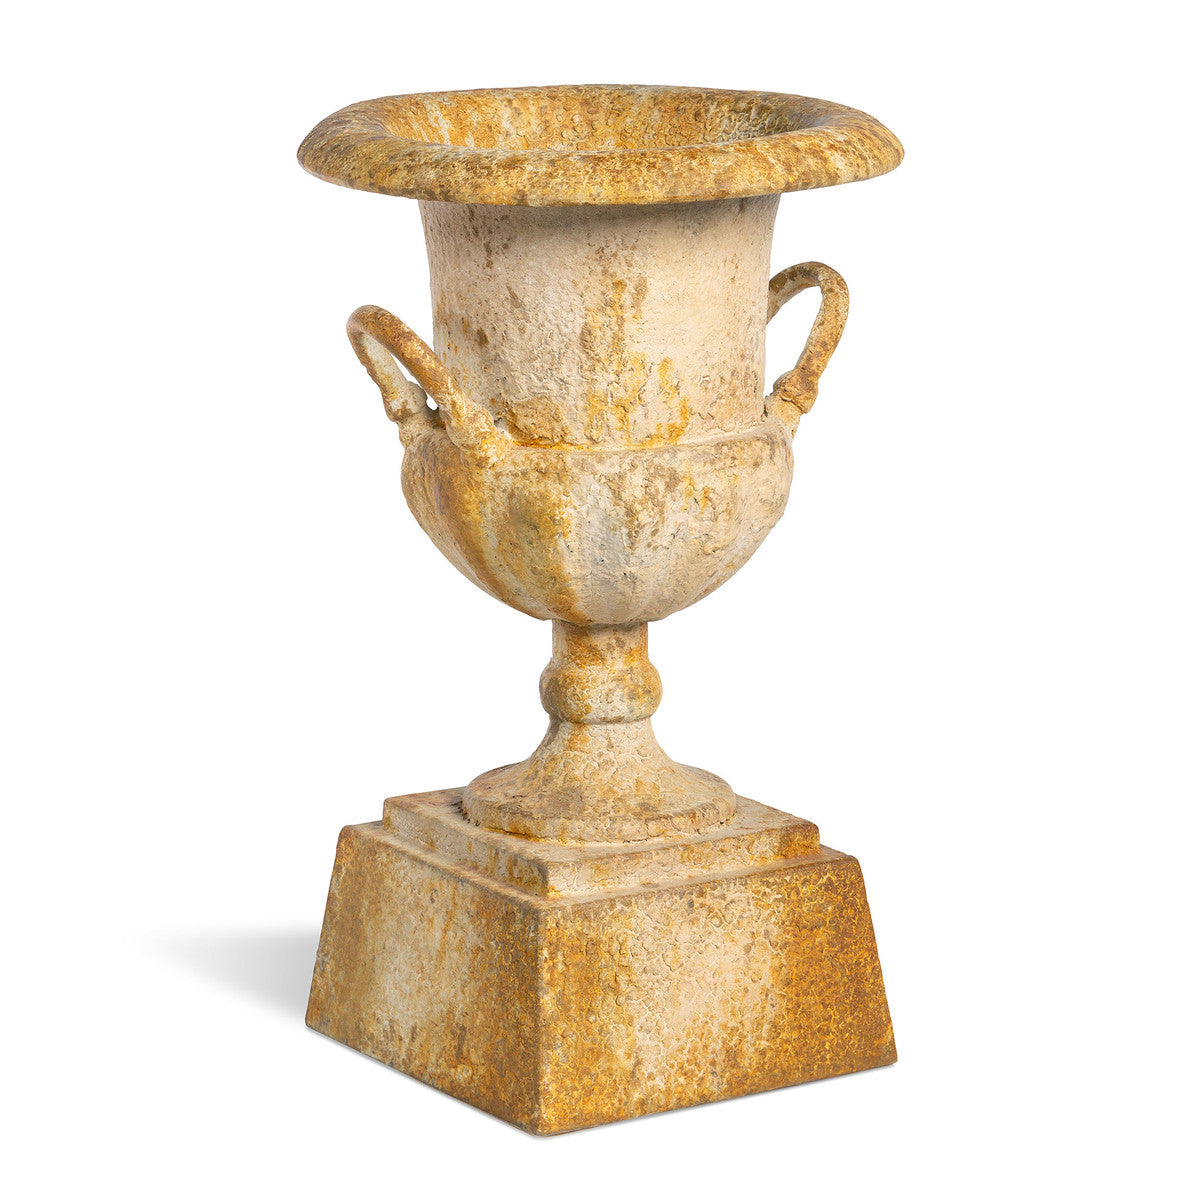 Restoration Hardware Urns for sale, Aged  Iron Estate Urn on Pedestal for sale